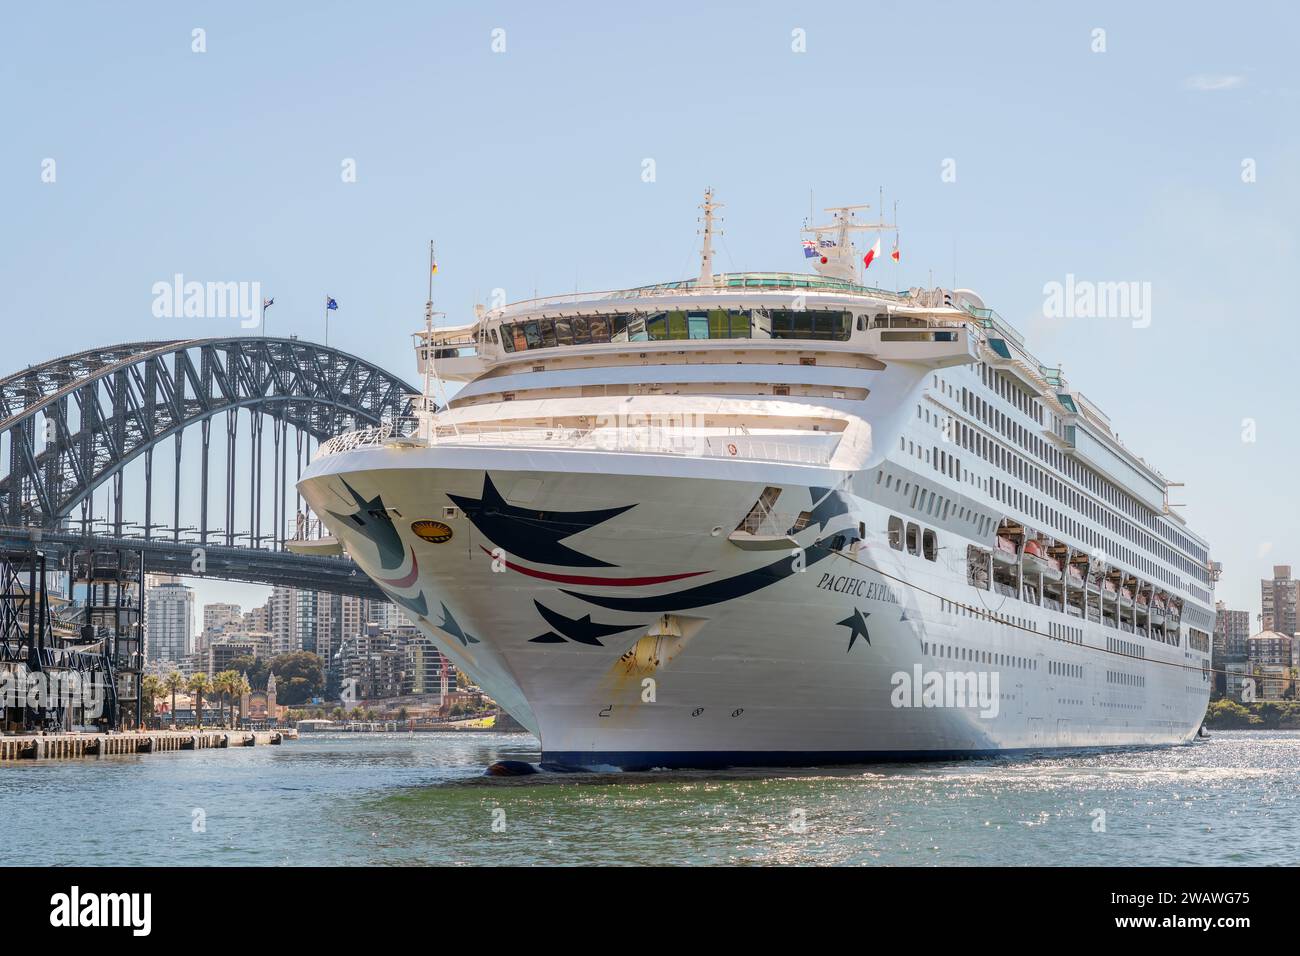 Sydney, Australien - 19. April 2022: P&O Cruises Pacific Explorer Kreuzfahrtschiff auf dem Weg vom Hafen von Sydney zum White Bay Cruise Terminal Stockfoto